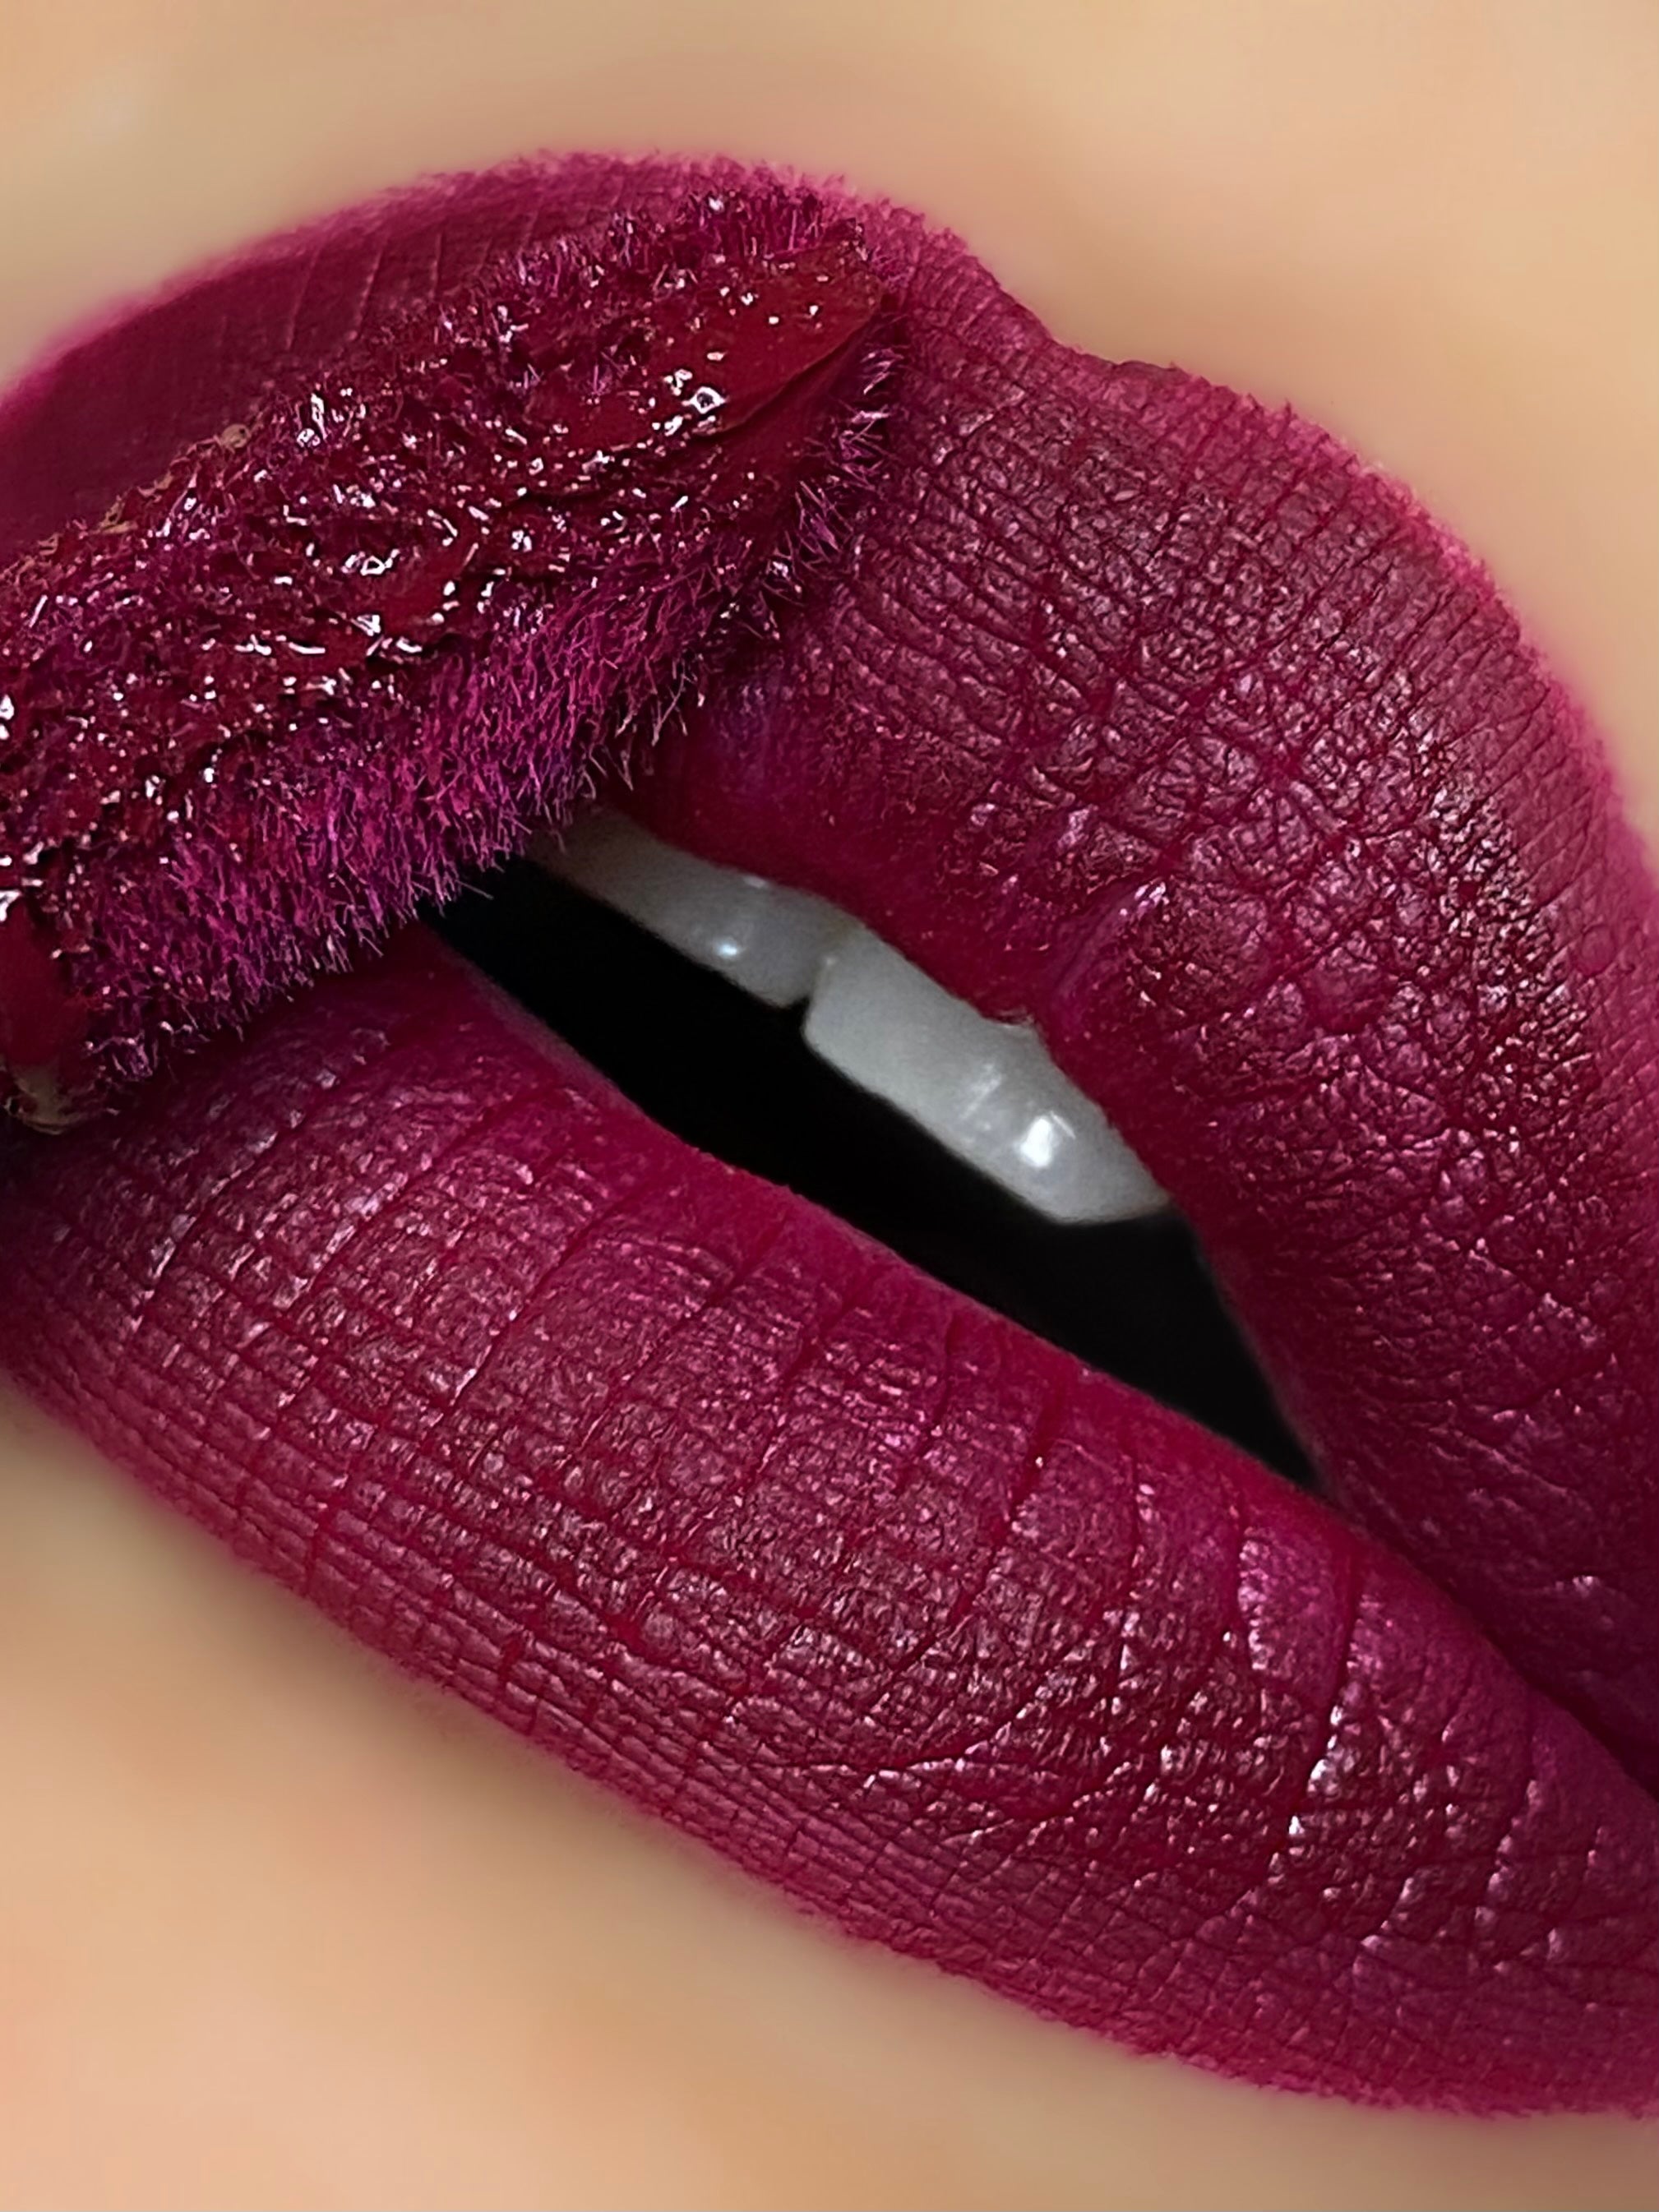 BERRY ME Matte liquid lipstick – Brittany Chanel Cosmetics